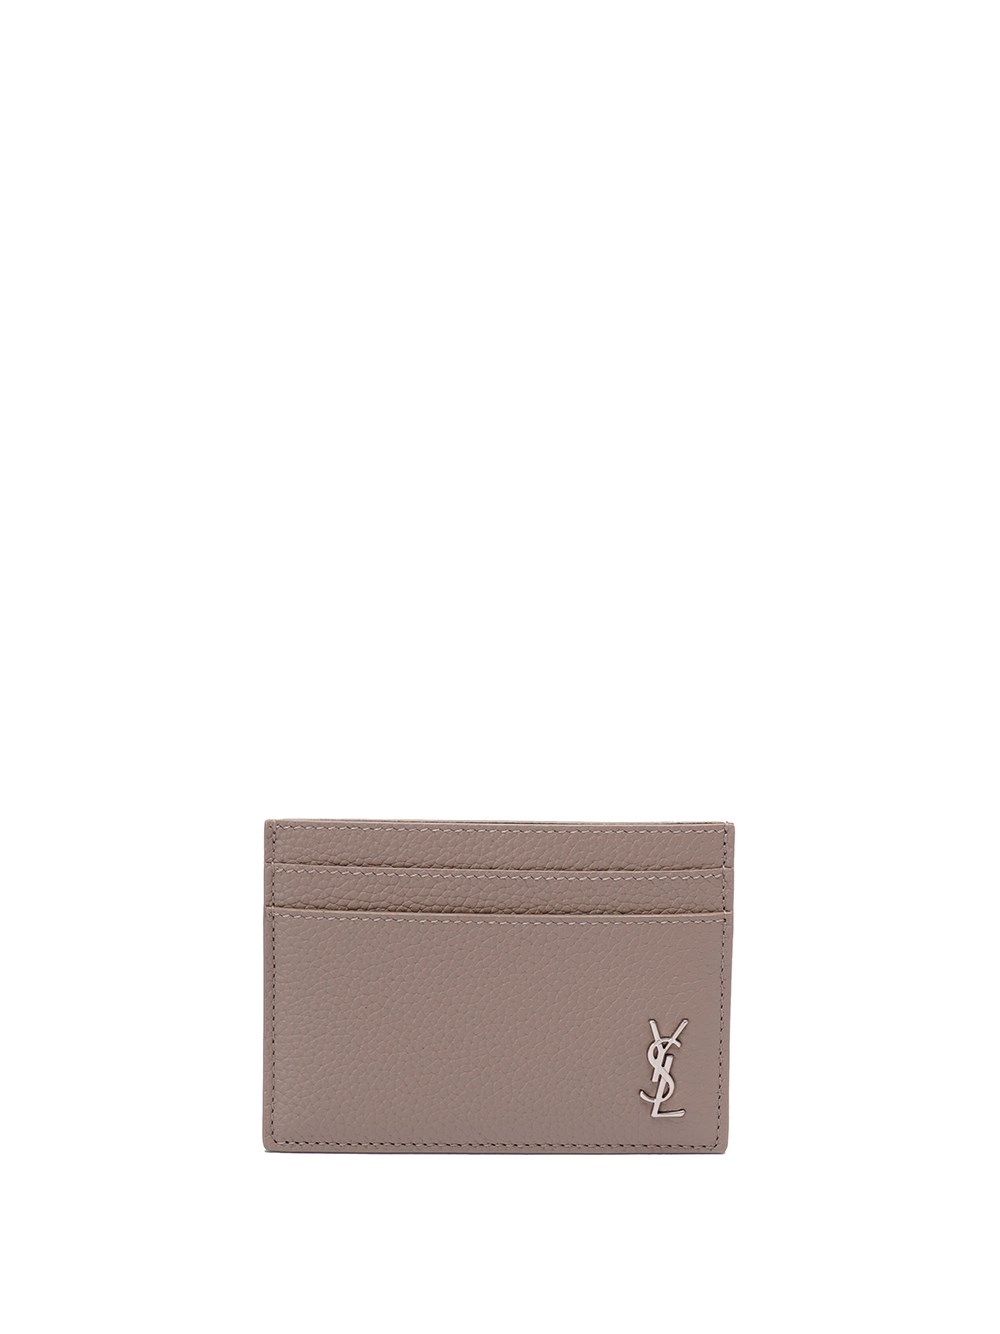 Saint Laurent Tiny Cassandre Leather Cardholder